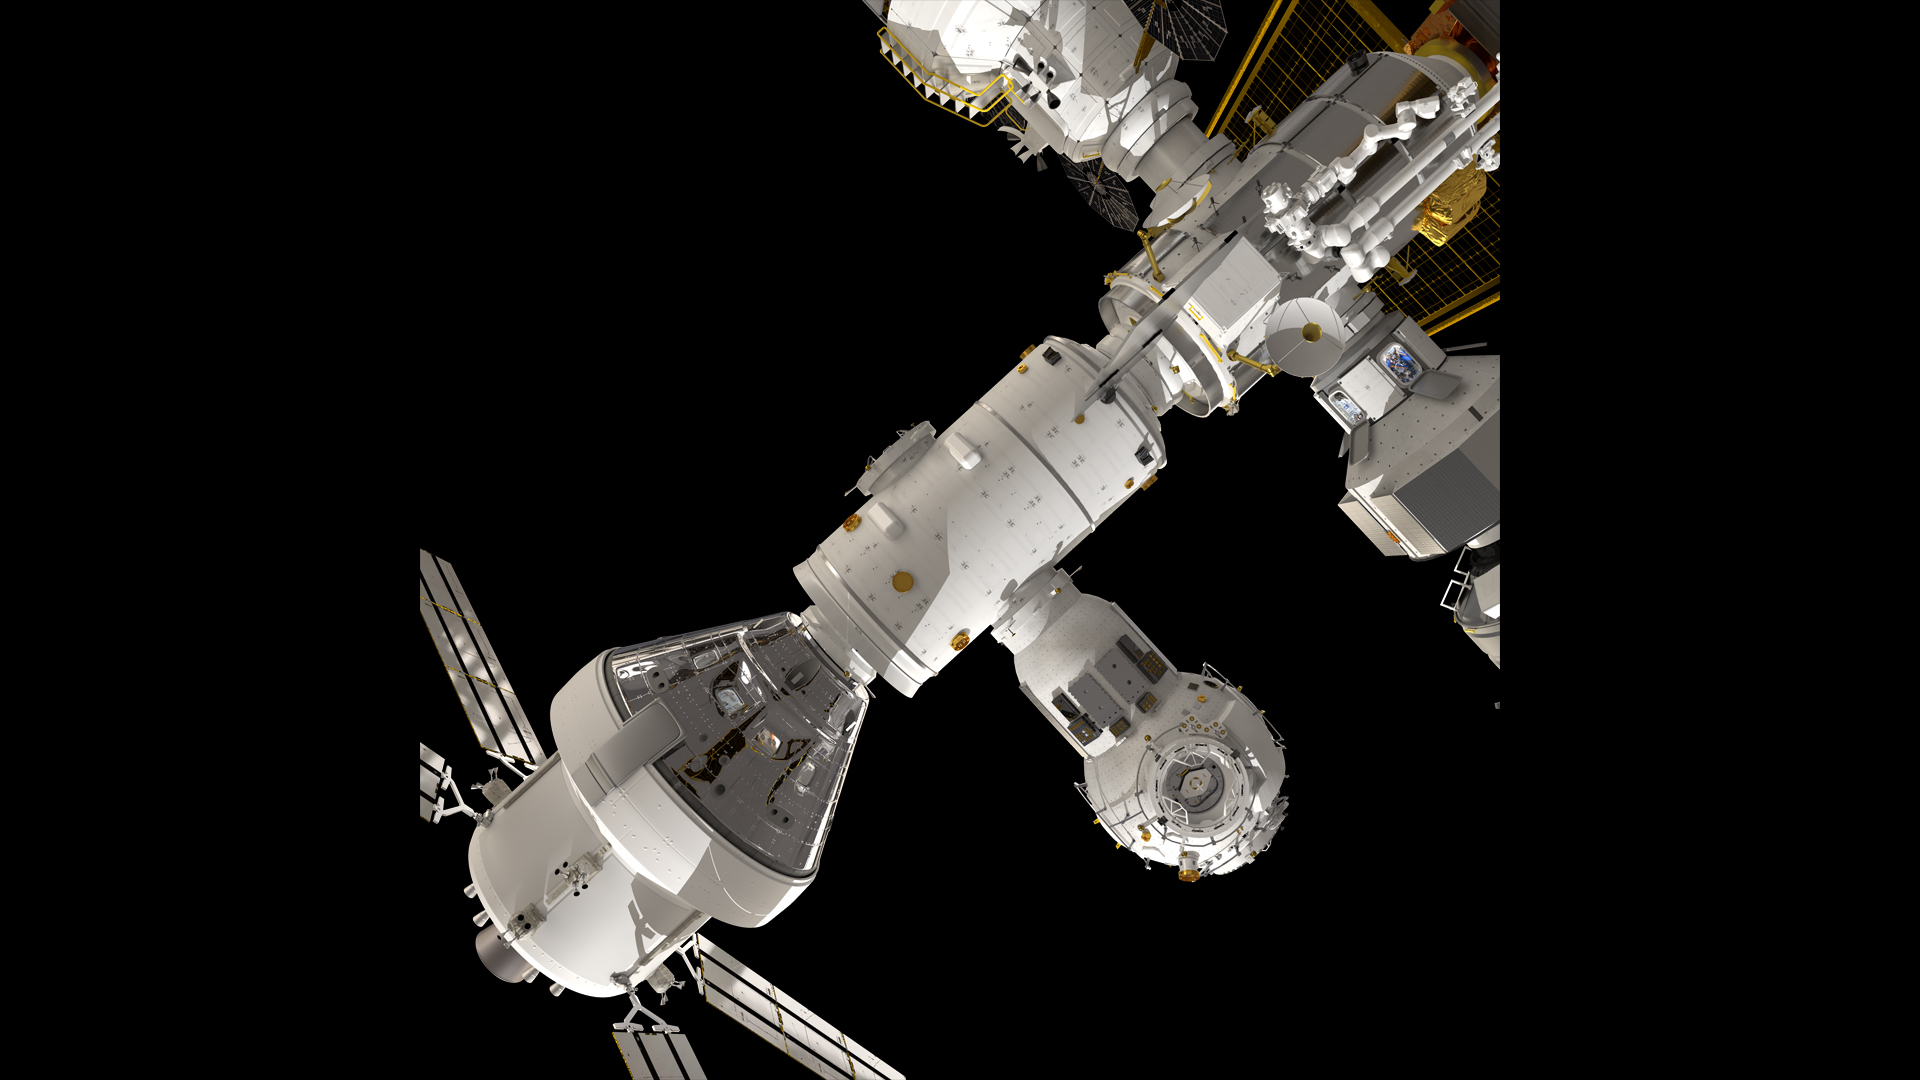 una nave espacial orión acoplada a la estación espacial de entrada en la ilustración de un artista.  La puerta de enlace tiene muchos módulos, muy parecidos a la estación espacial internacional pero más pequeños.